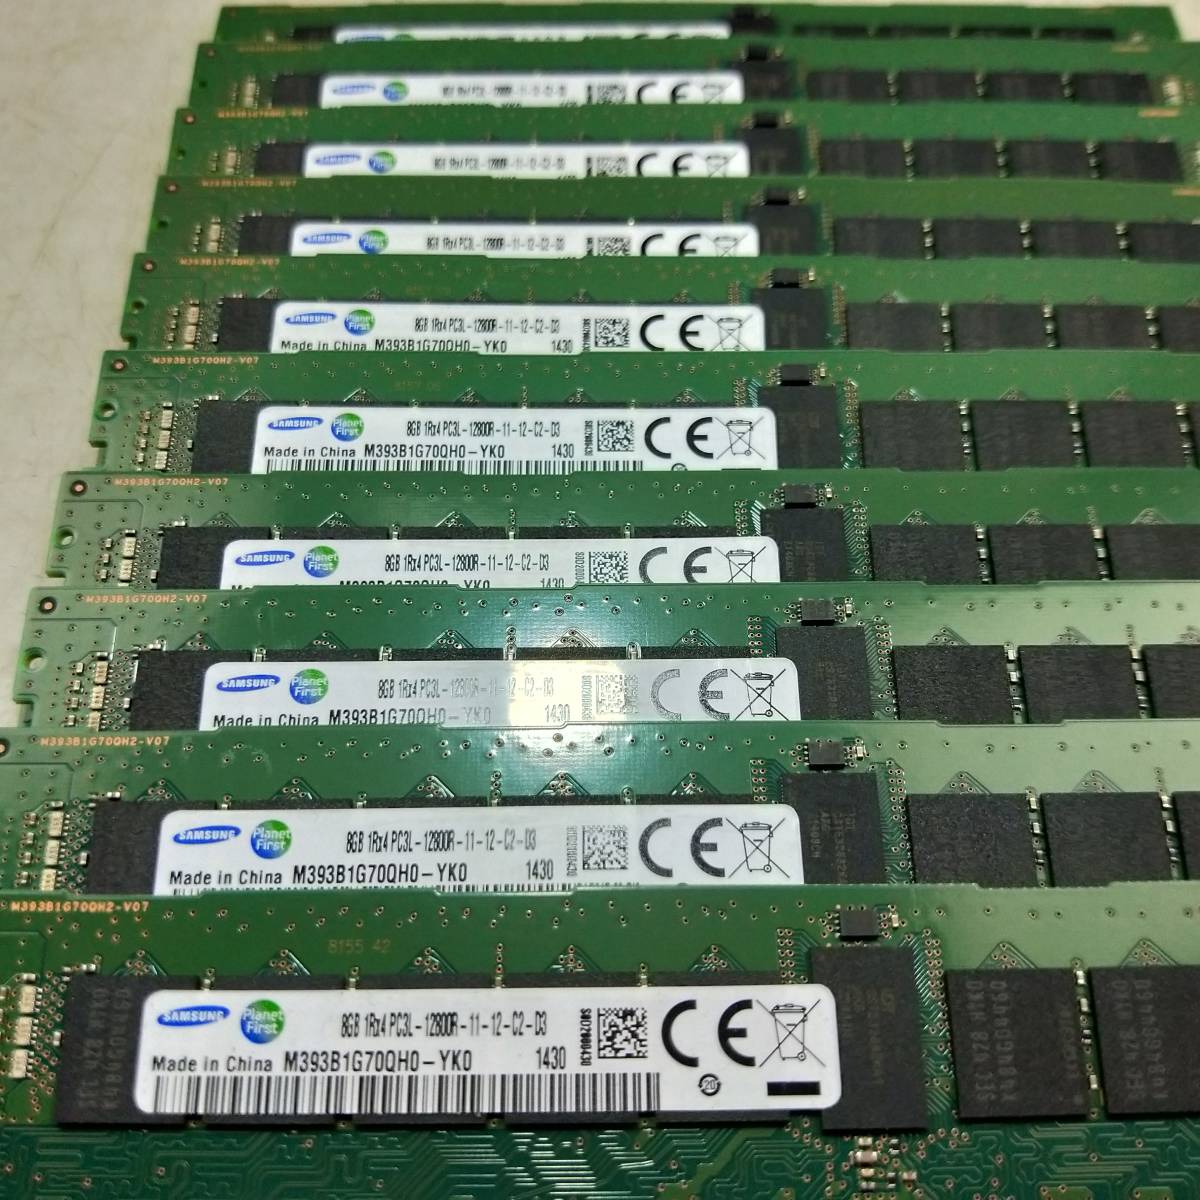  такой же один Rod DELL PowerEdge R420 модель [ память ]Samsung 8GB 1Rx4 PC3L-12800R-11-12-C2-D3 8GBx10 листов итого 80GB 1430#DELL R420 память ②